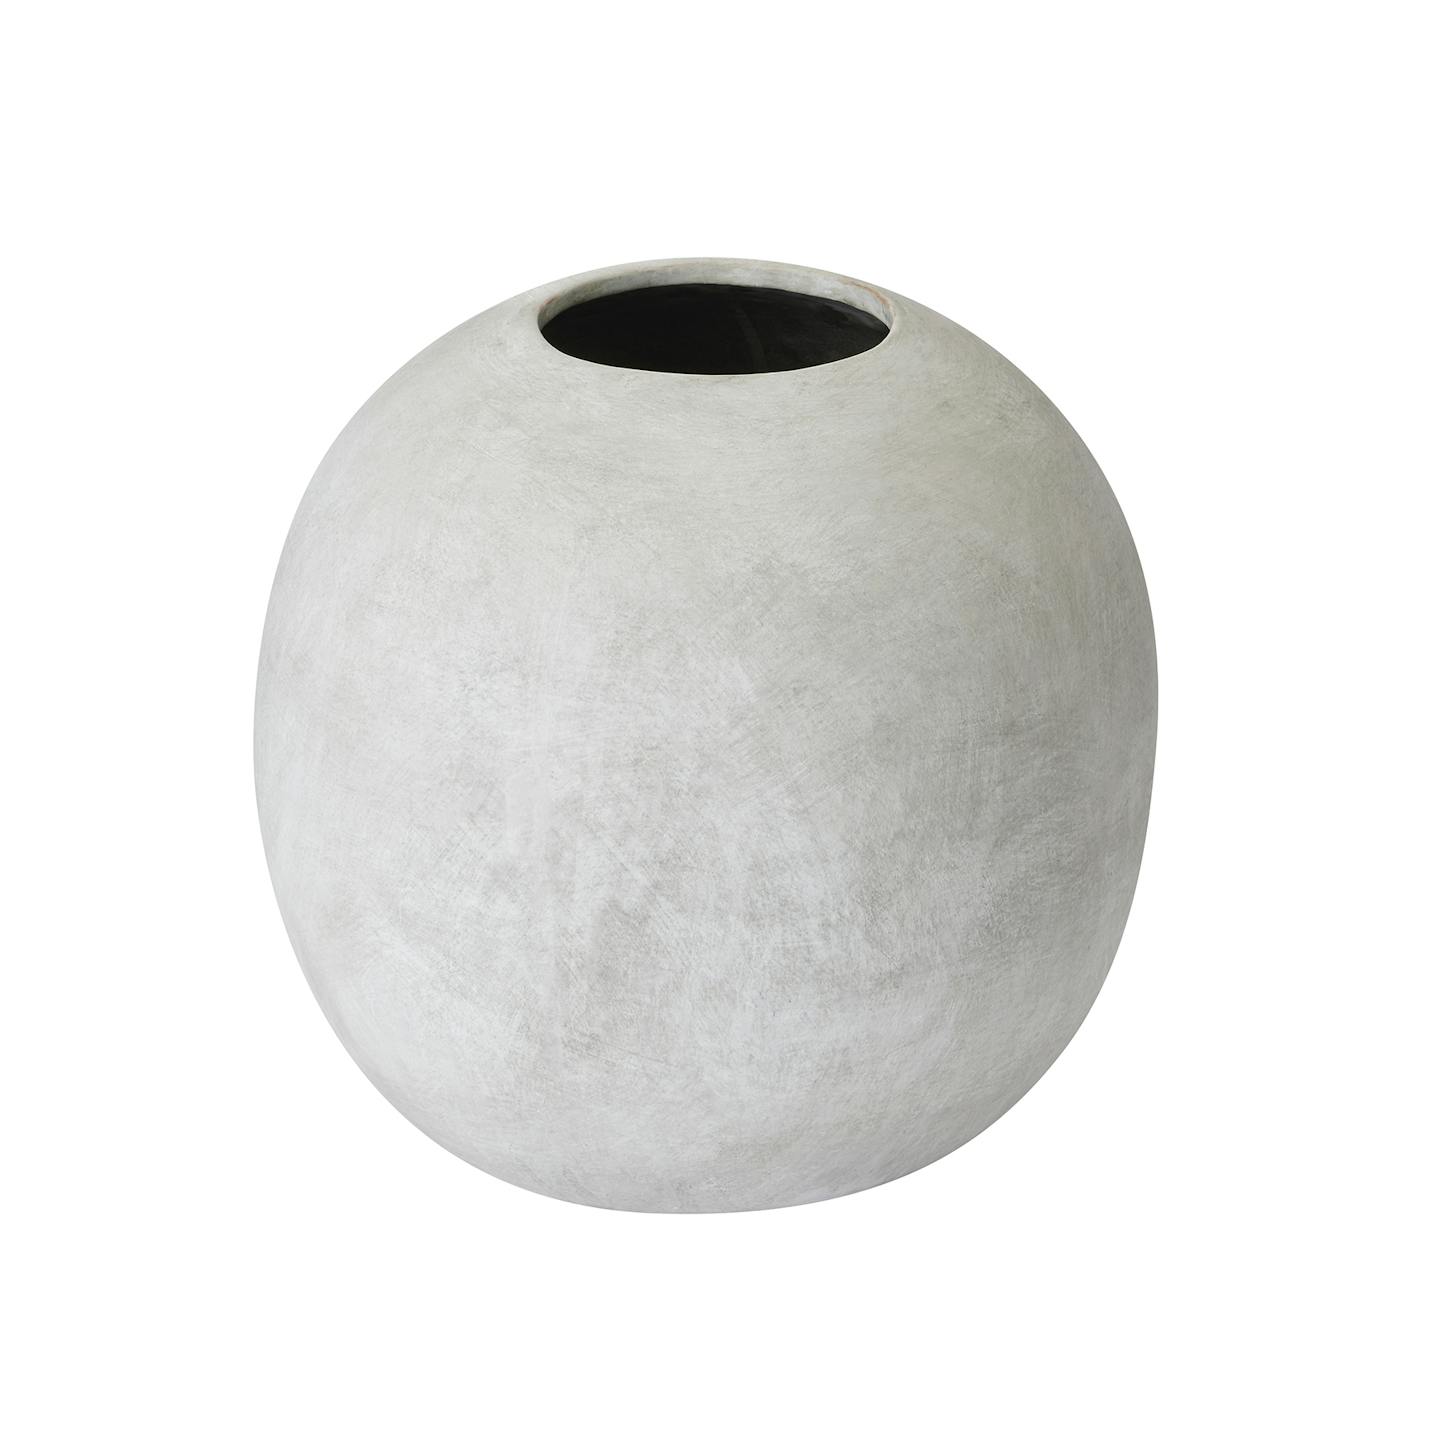 Globe ceramic vase